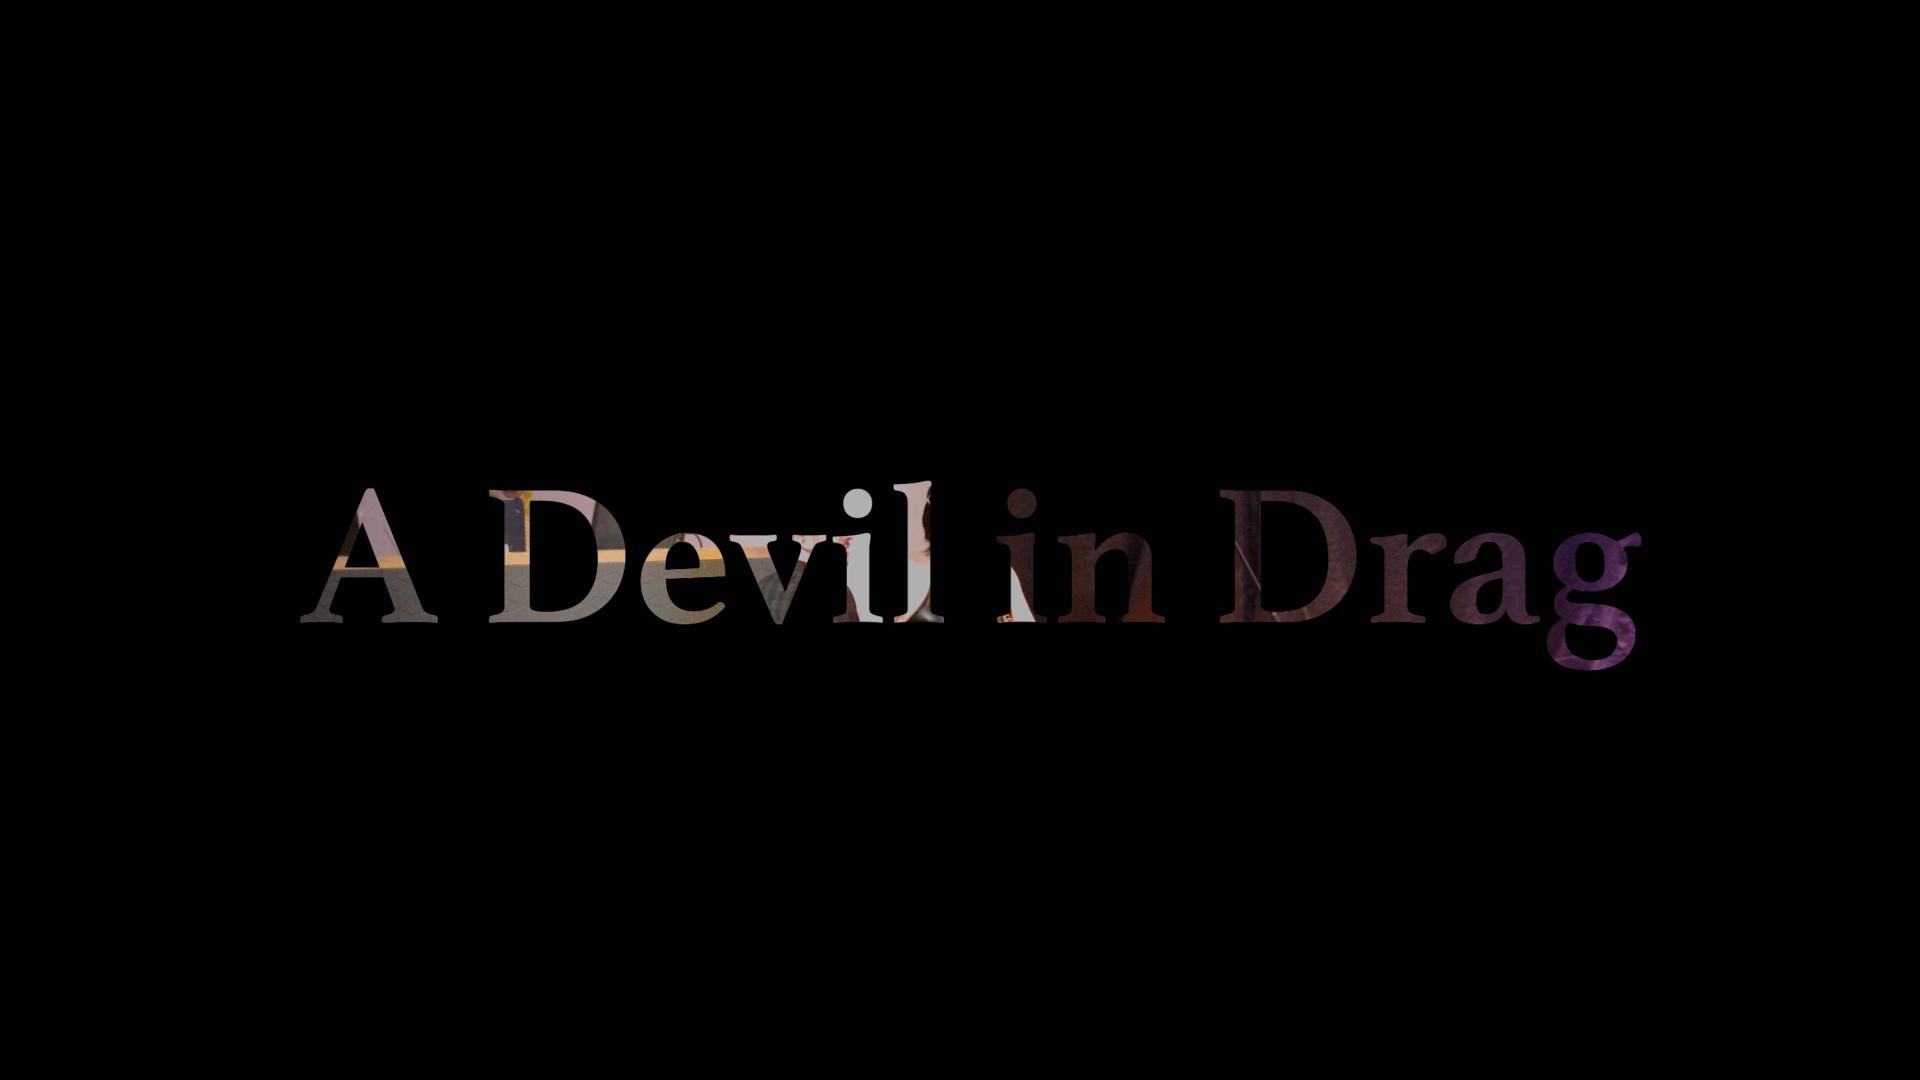 布里斯托大学电影电视系 Term 1 纪录短片《A Drag in Devil》